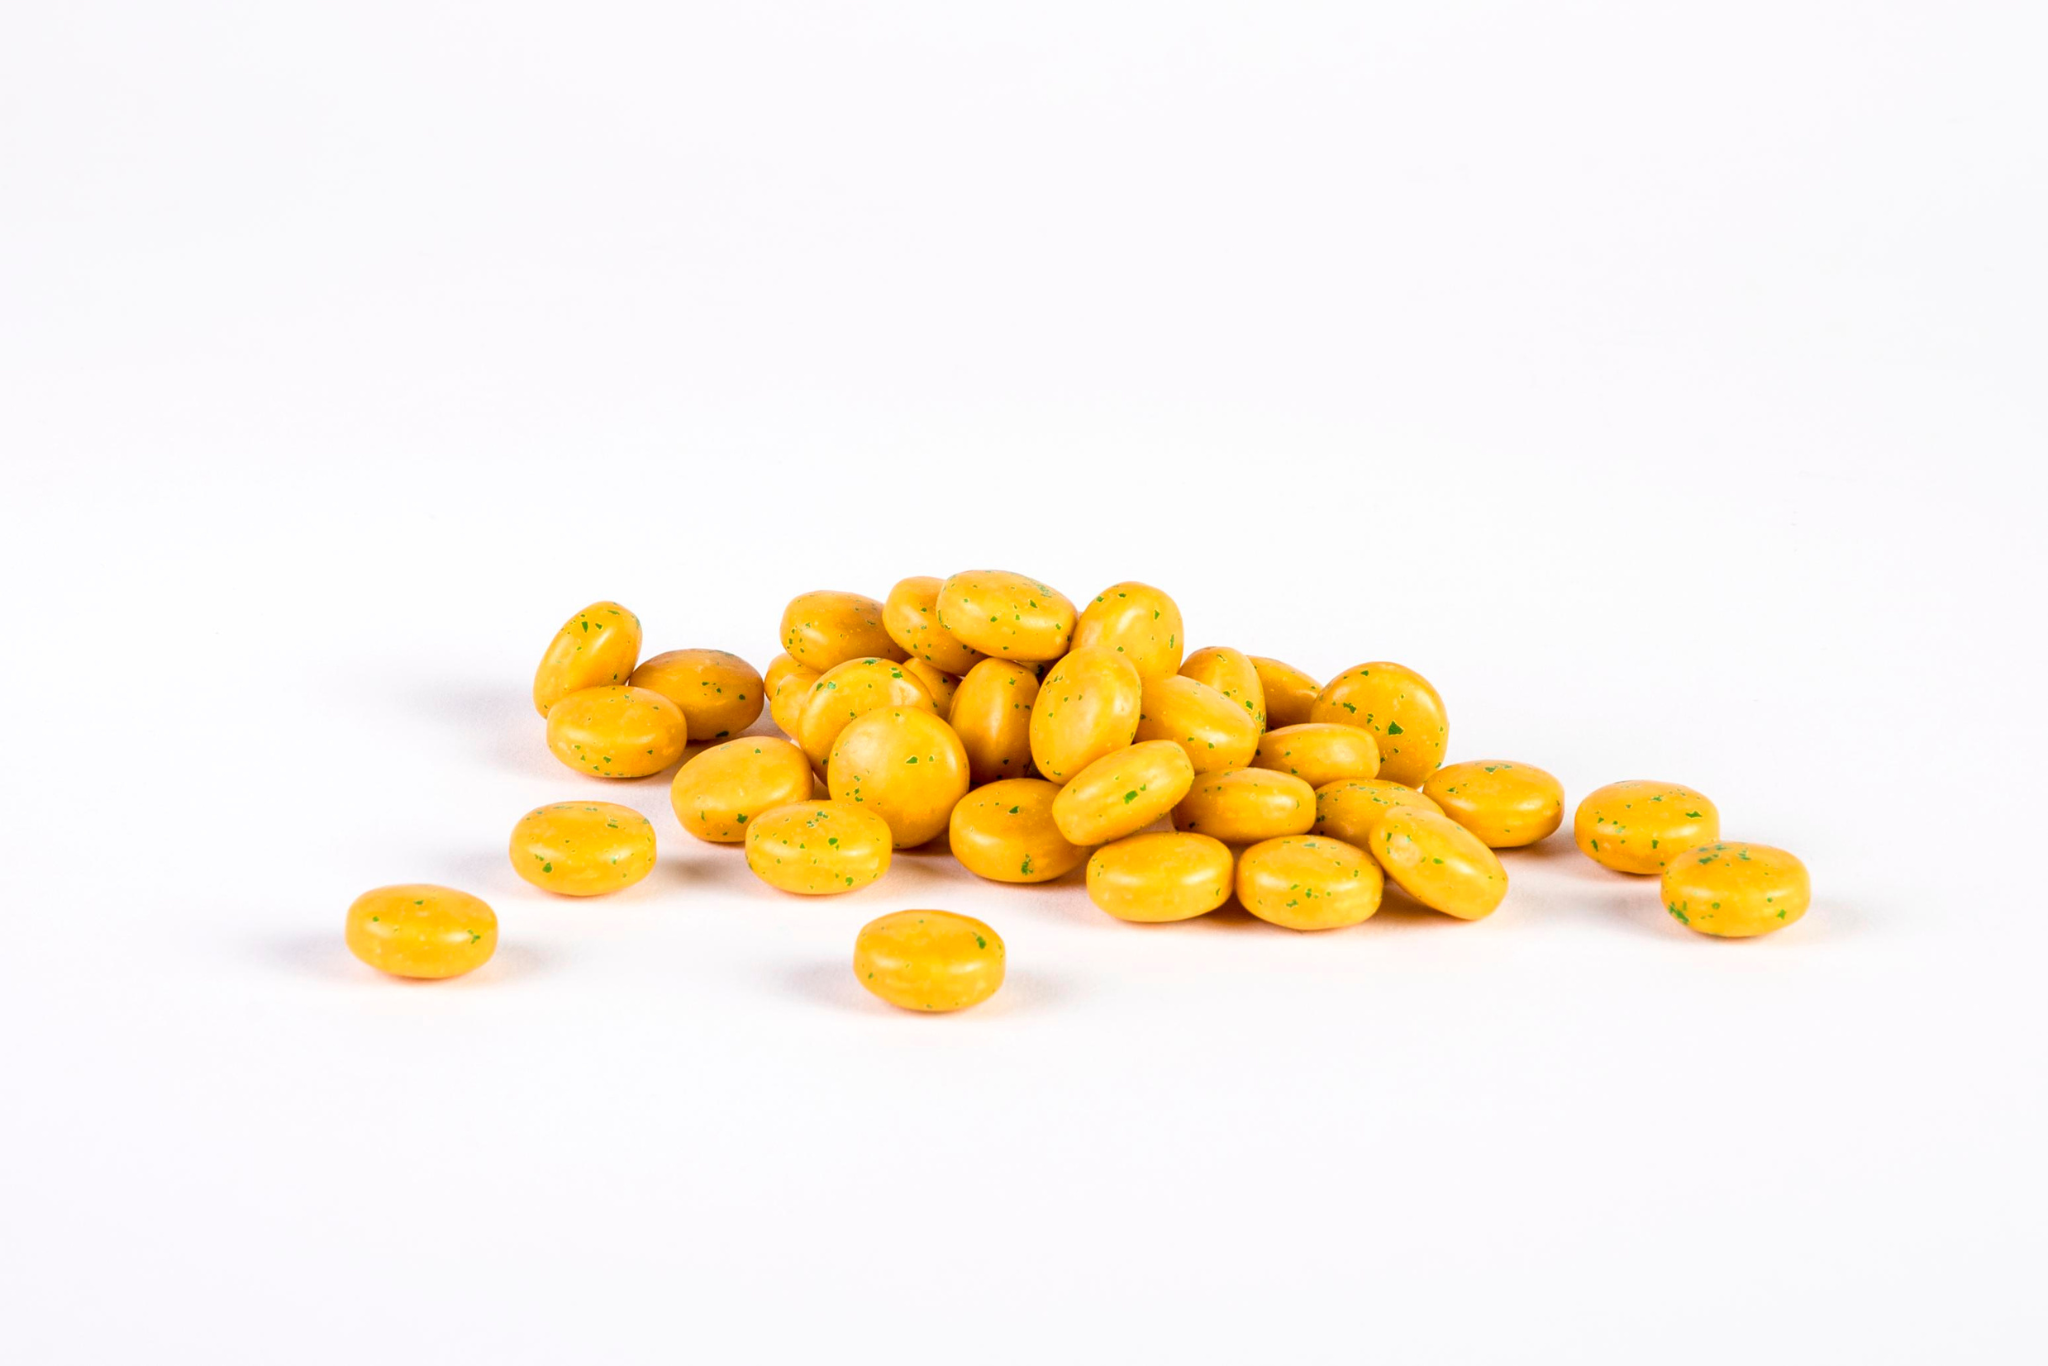 Gomme masticabili Multivit Gum disposte accanto alla loro confezione aperta, per mostrare la dimensione e il colore invitante del prodotto, simbolo della varietà di vitamine naturali contenute